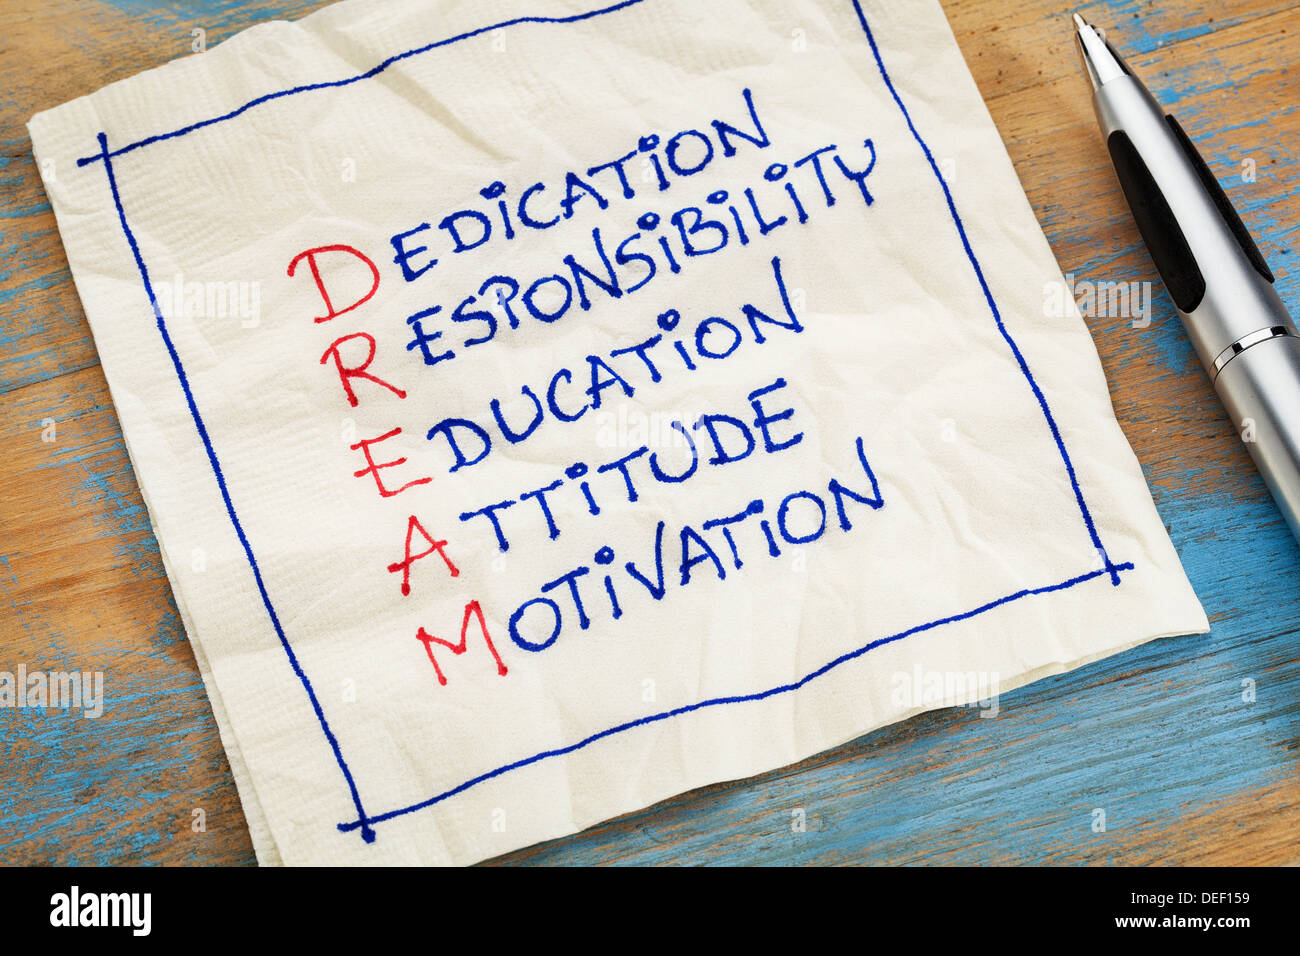 Dedicación, responsabilidad, educación, actitud, motivación - acrónimo de ensueño - una servilleta doodle Foto de stock